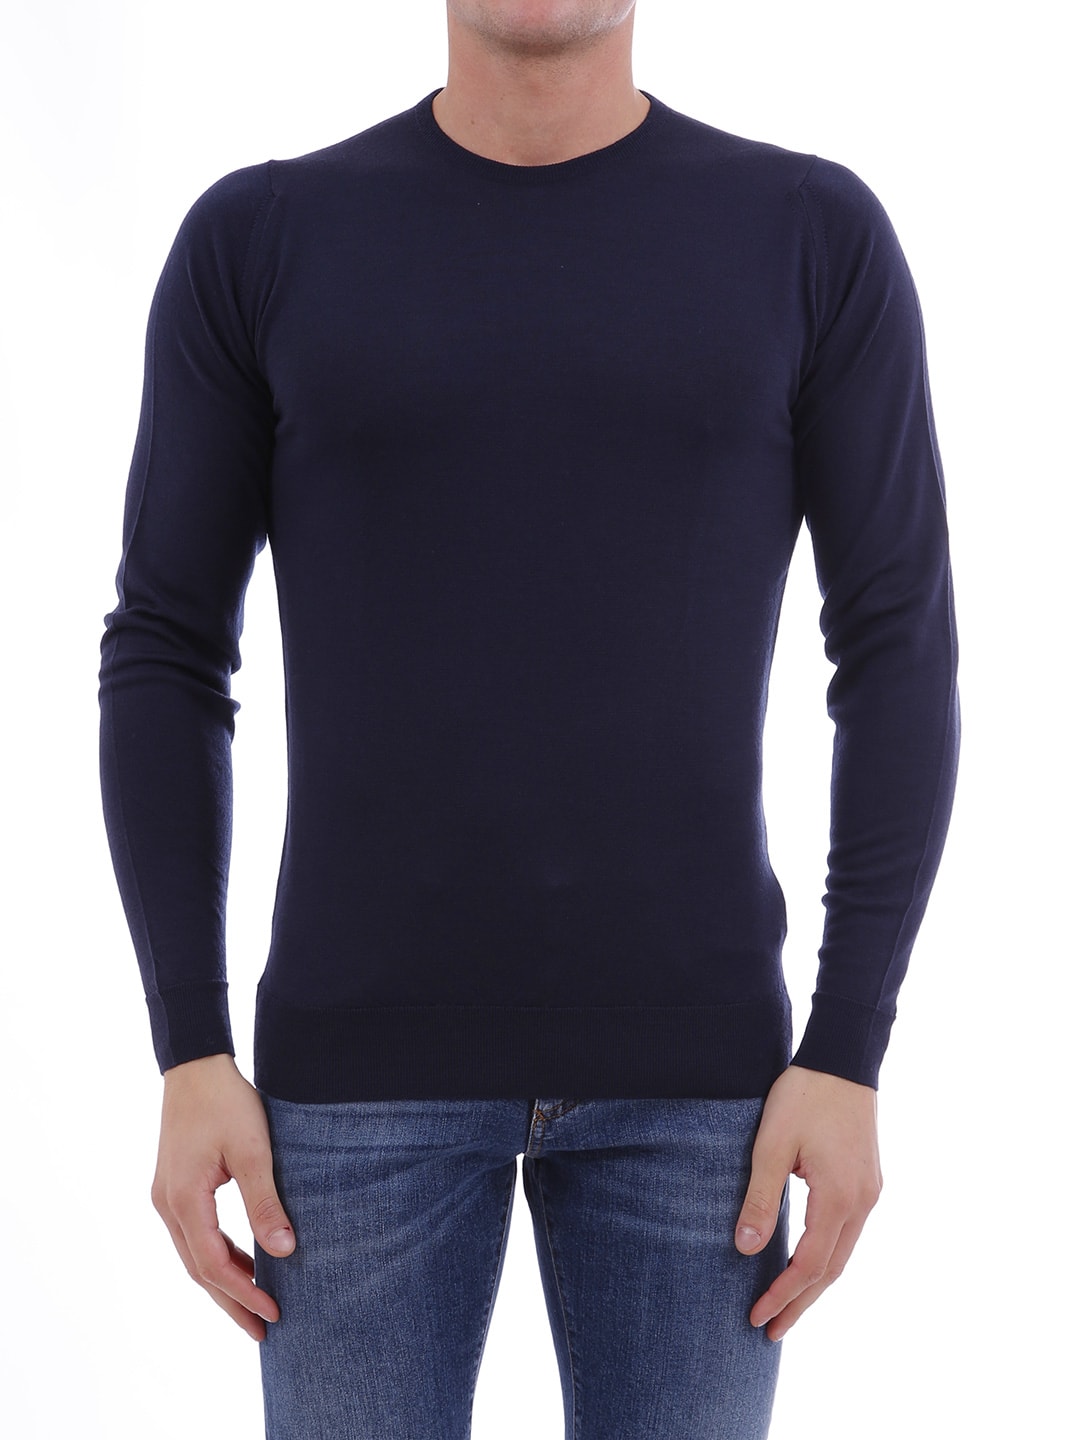 John Smedley Blue Sweater In Merino Wool